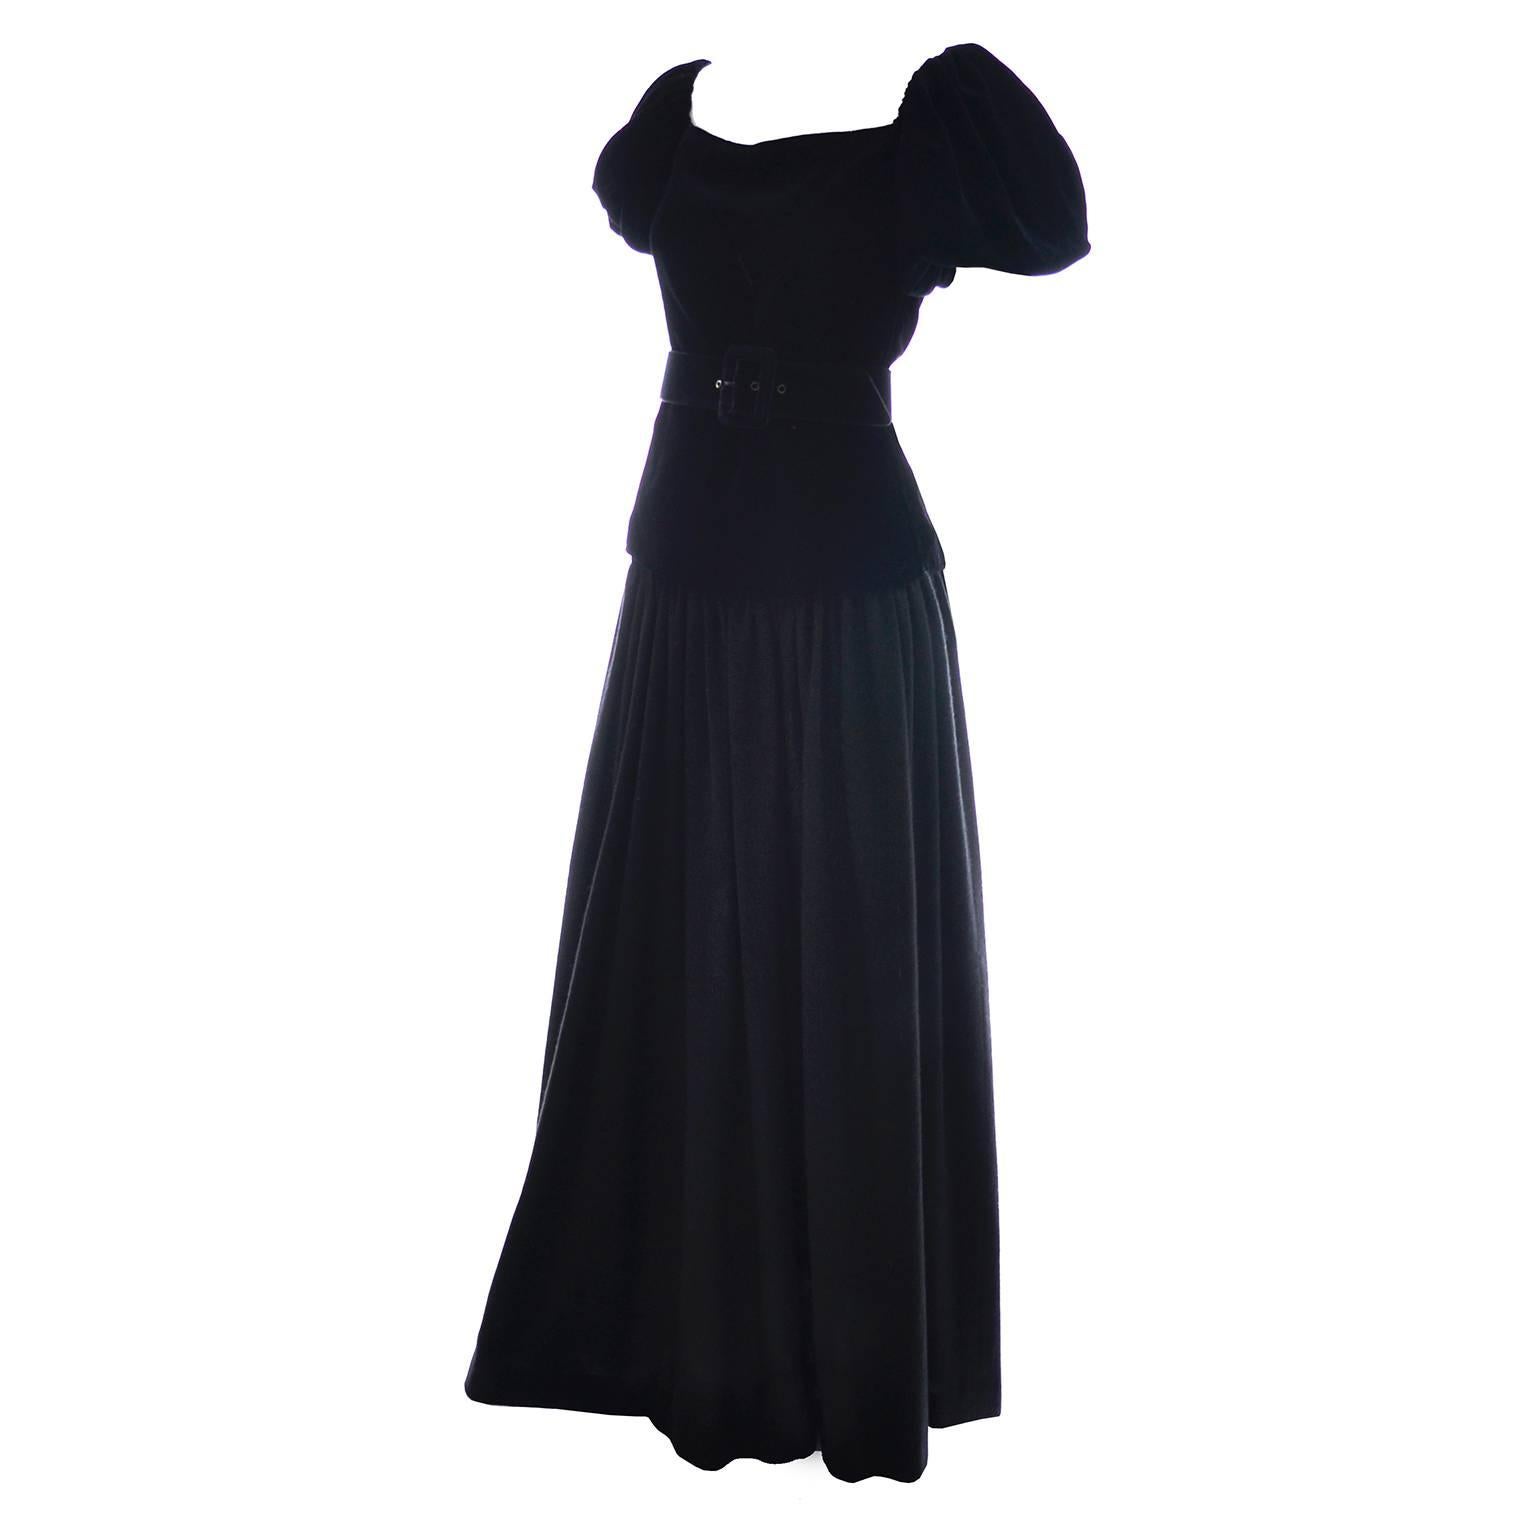 Yves Saint Laurent Vintage YSL Dress 2 pc Black Evening Gown 1970s Size 36  US 2